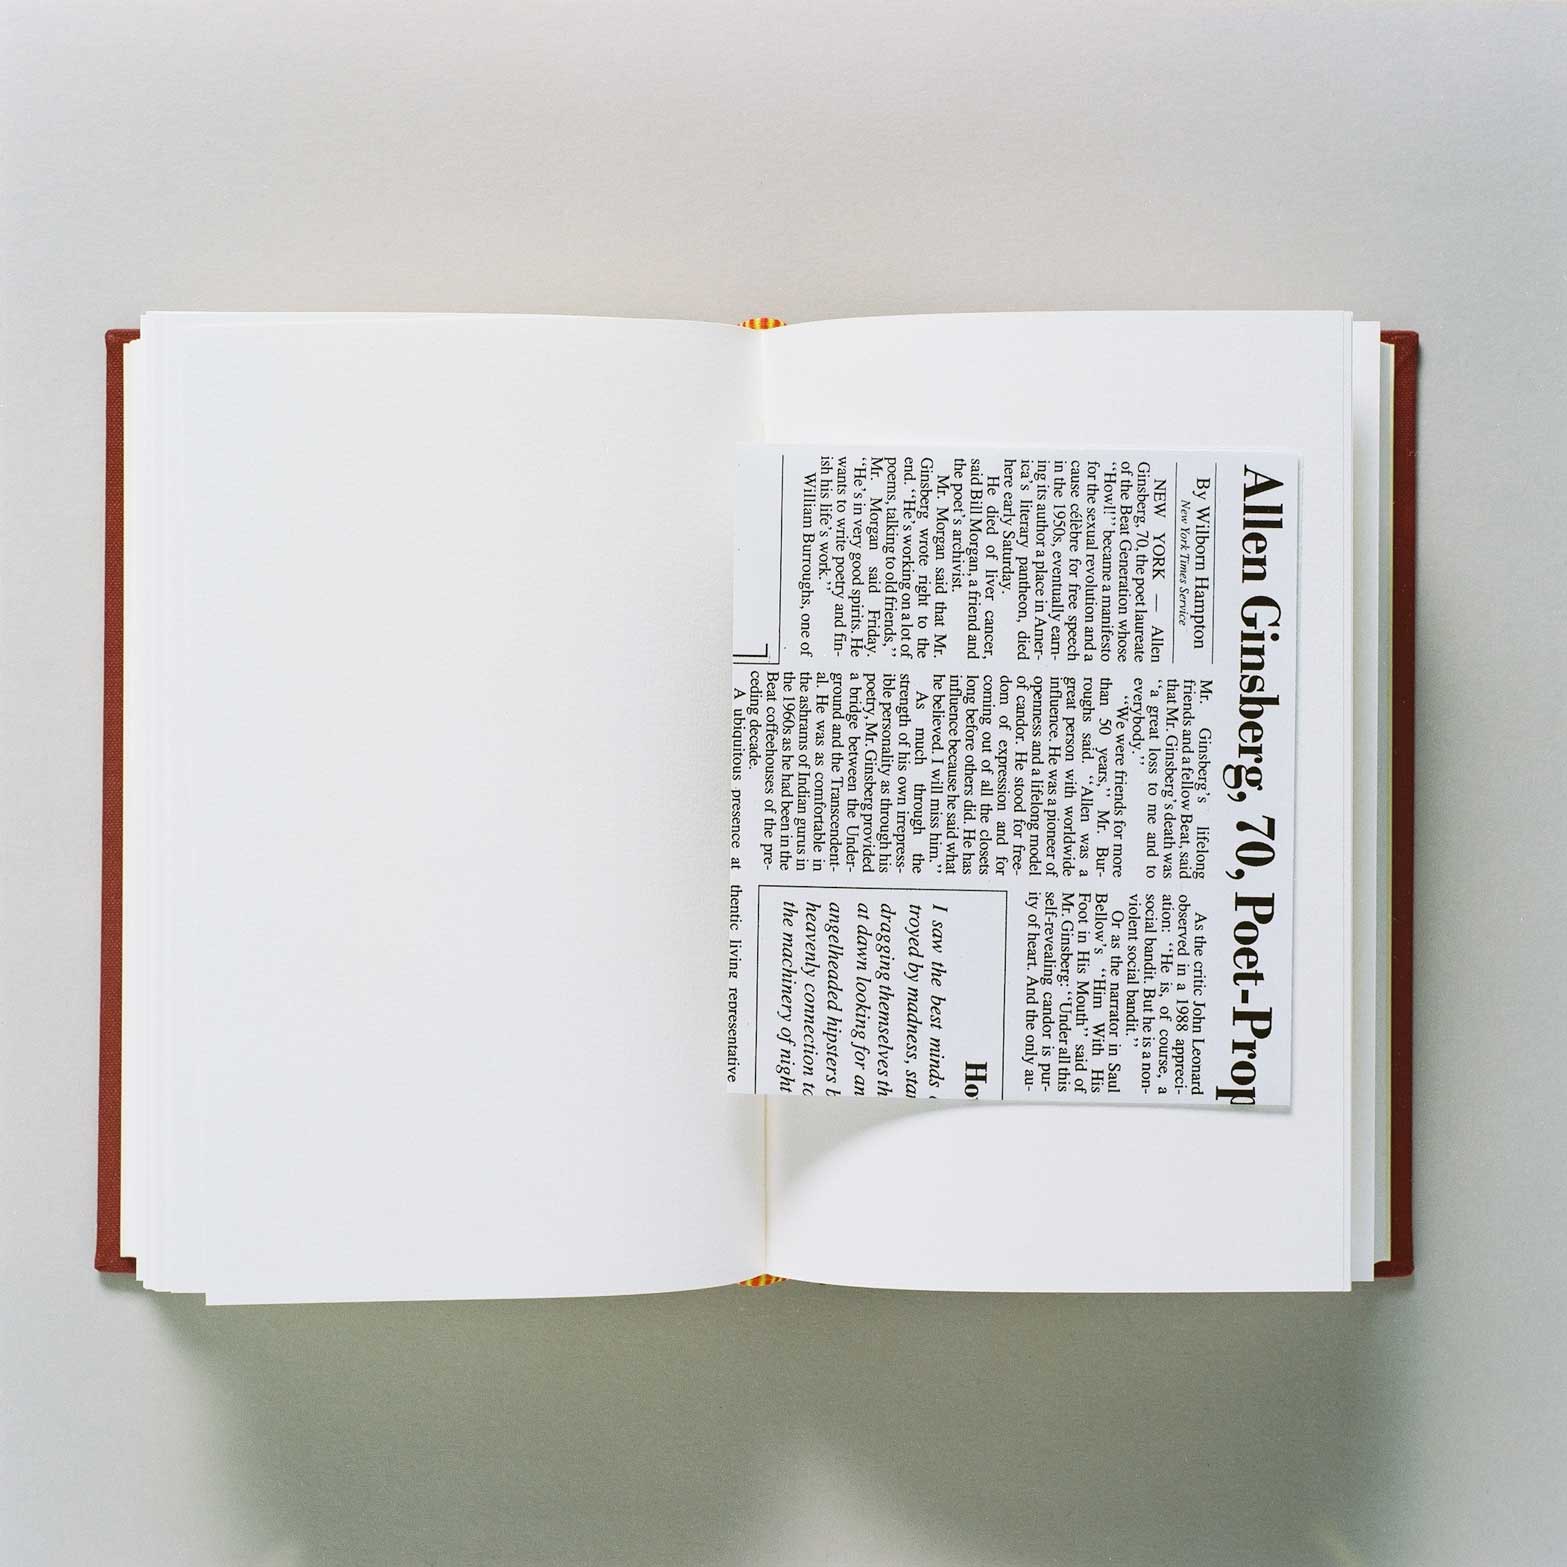 Allen Ruppersberg - The New Five Foot Shelf, 2001